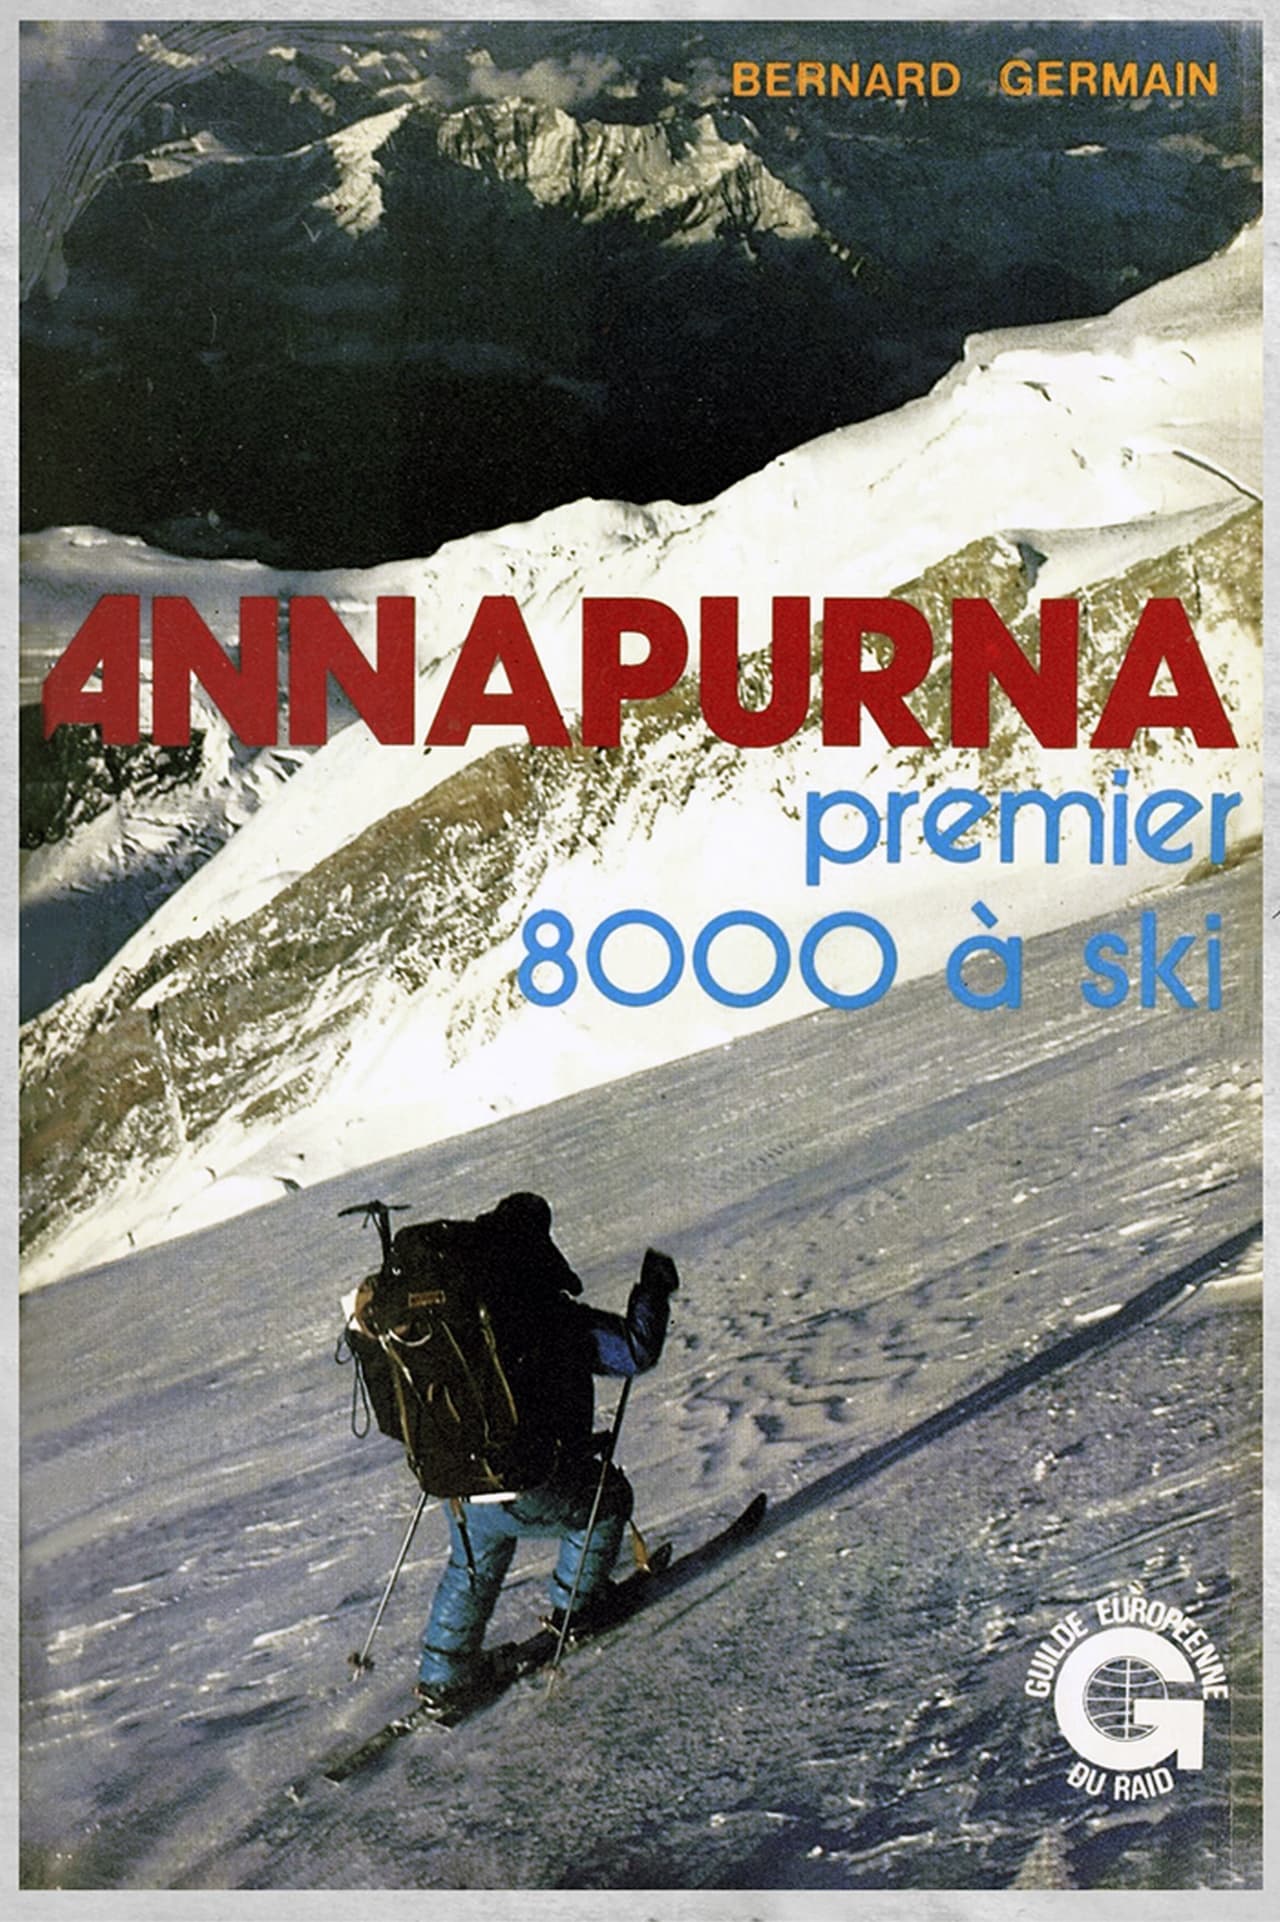 Annapurna, premier 8000 à ski